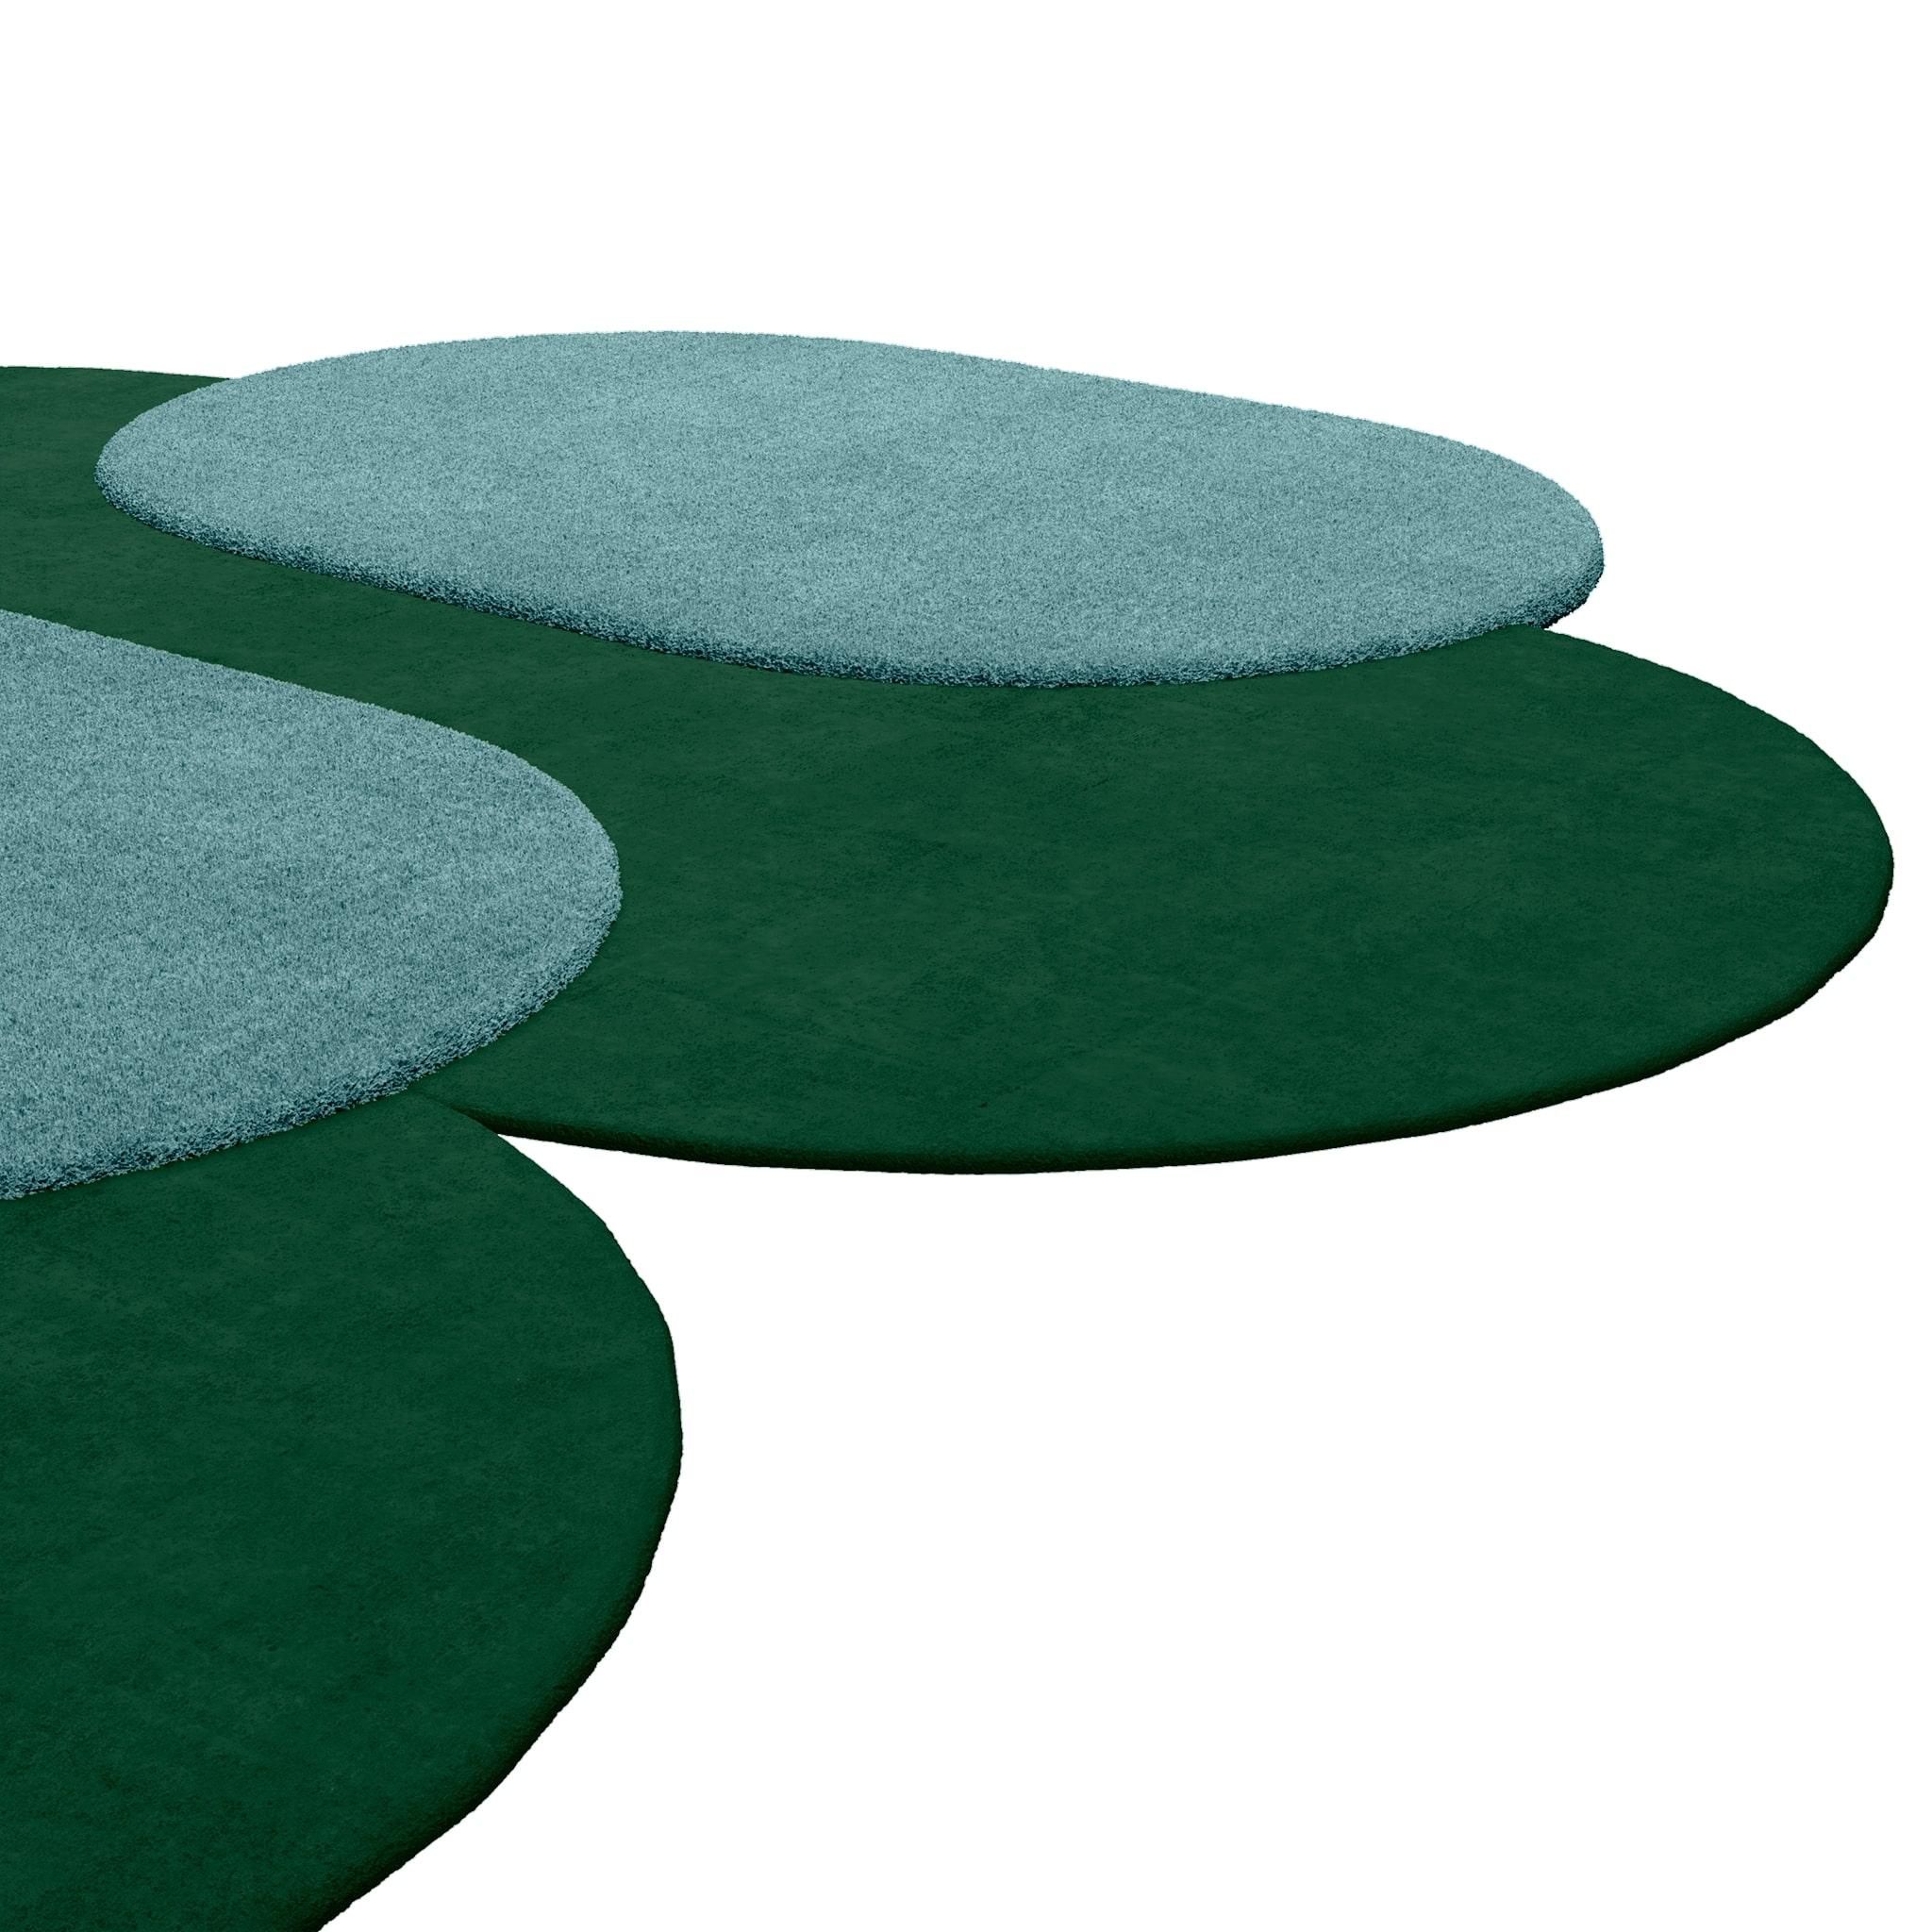 Tapis Shaped #048 est un tapis de style moderne en vert sombre et bleu clair, une combinaison de couleurs classique mais sophistiquée.
Avec une forme irrégulière qui juxtapose des cercles ovales aux couleurs contrastées, c'est un chef-d'œuvre de